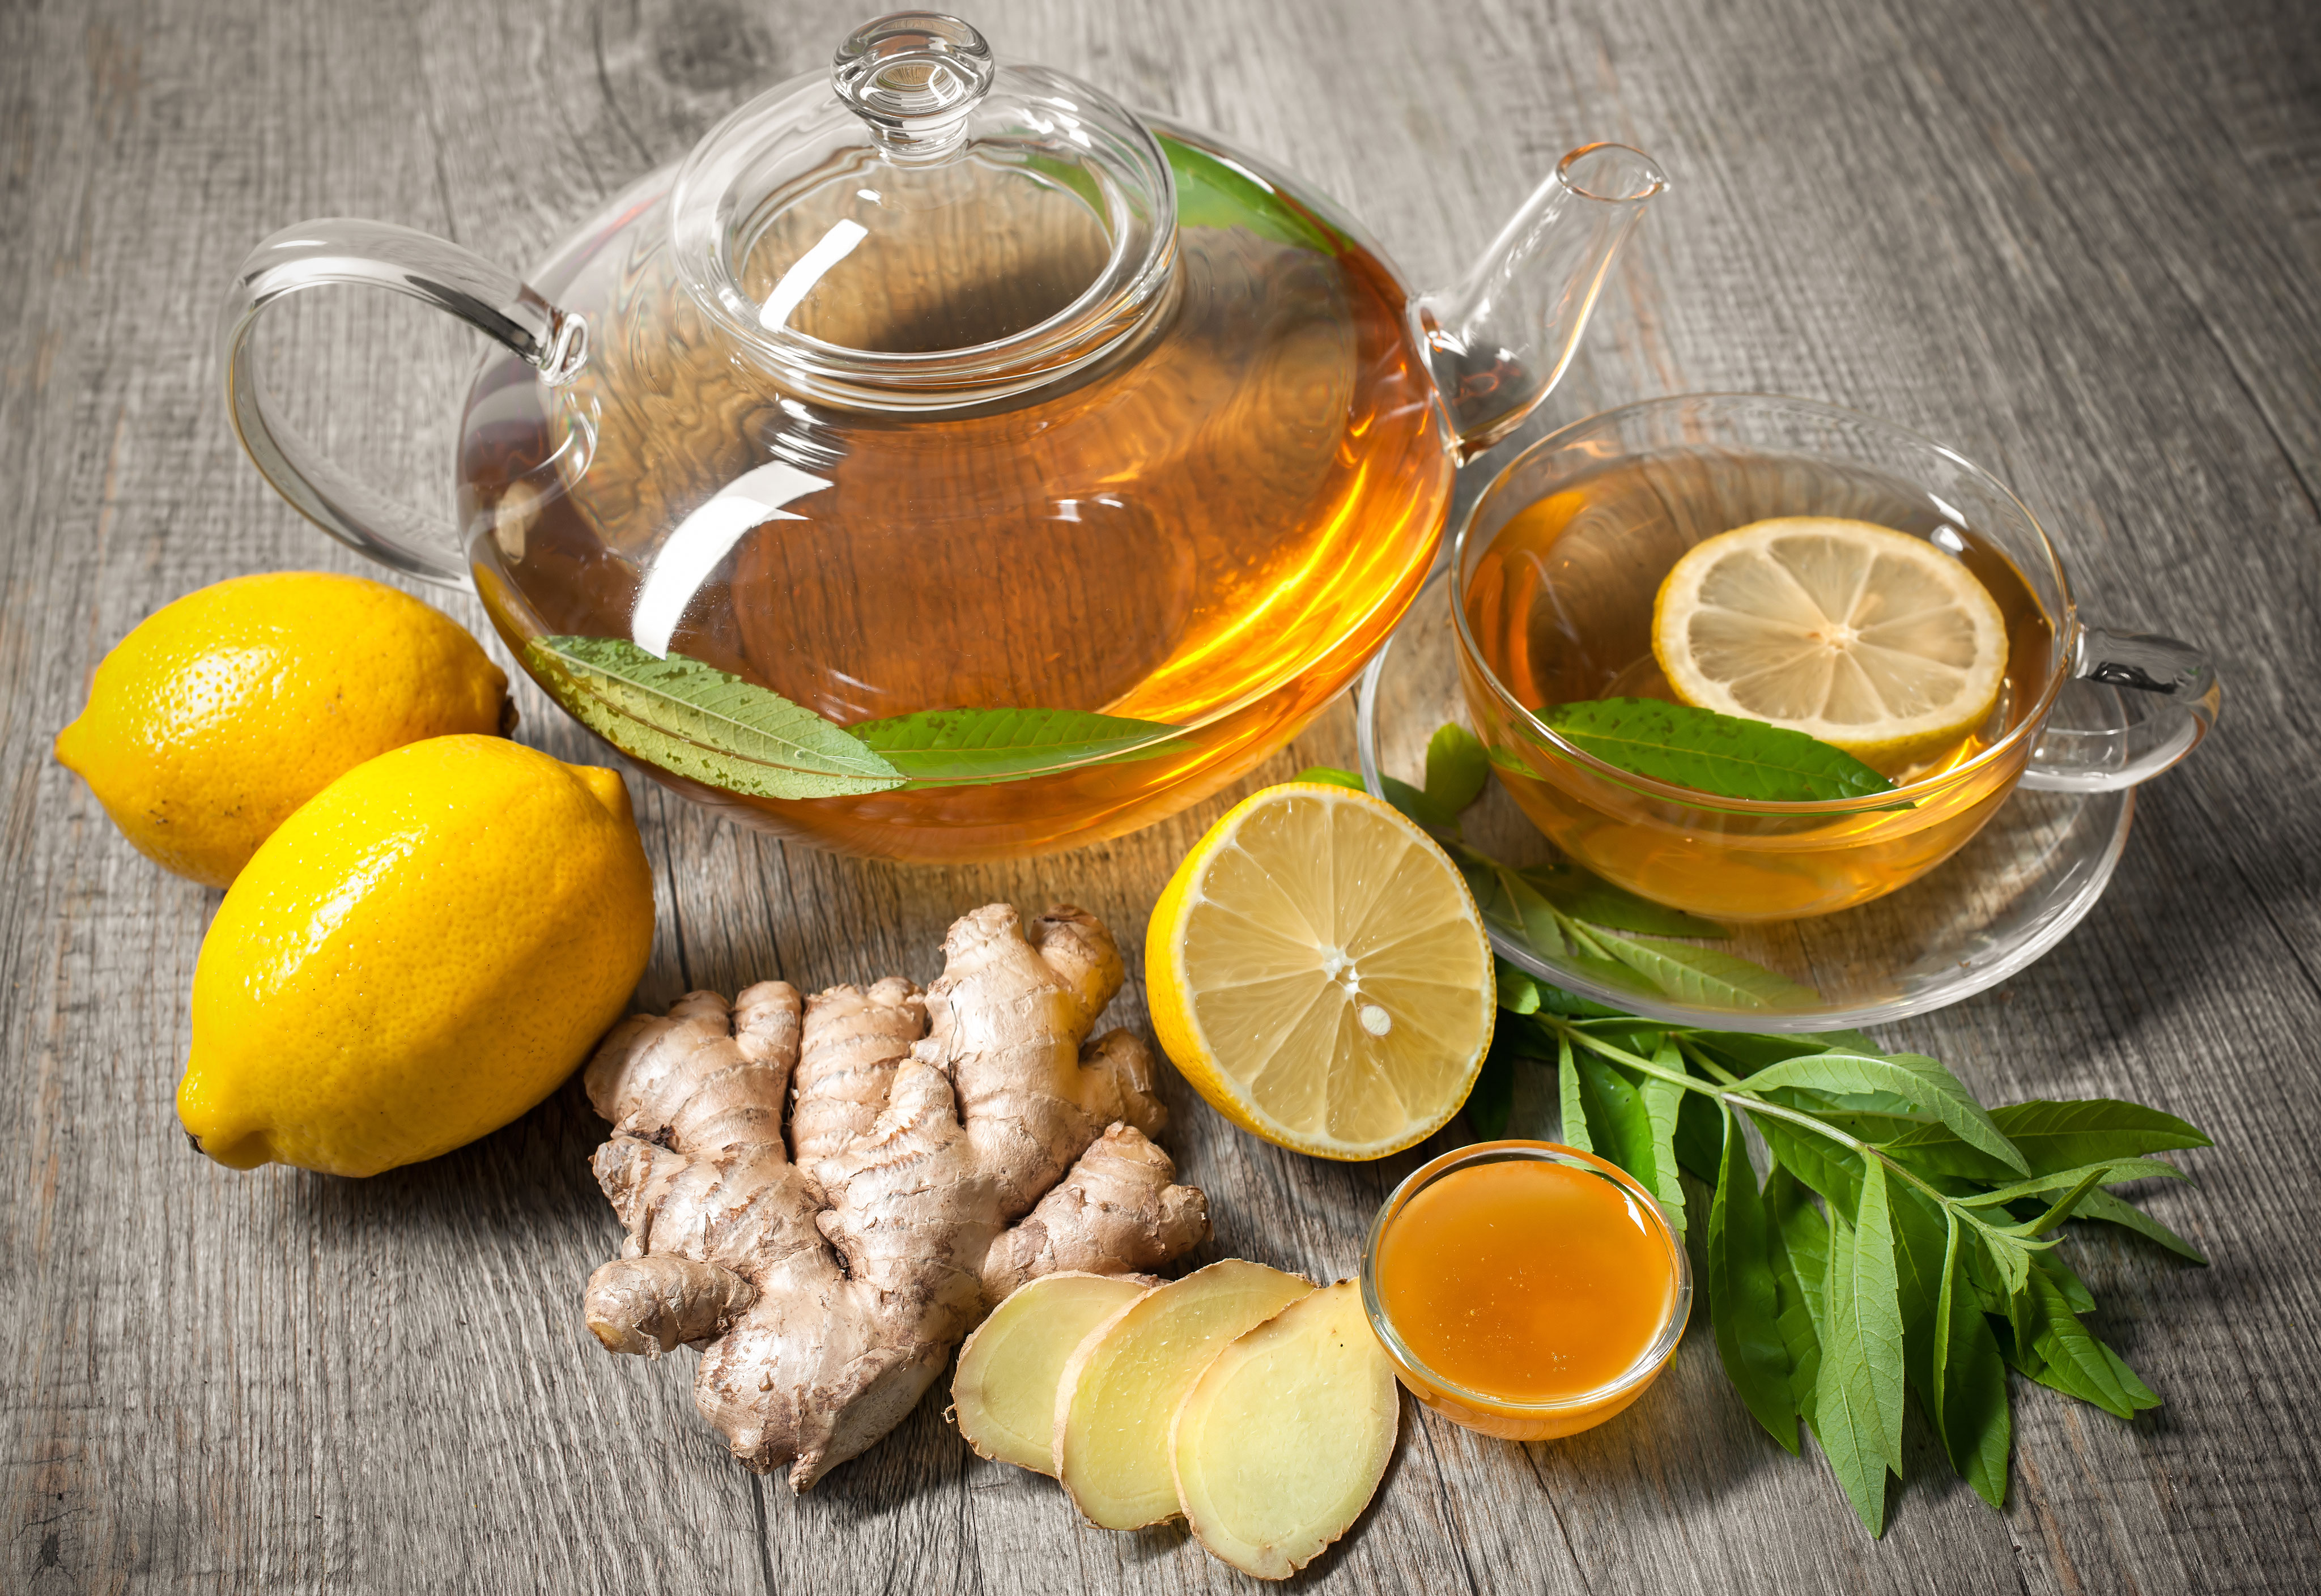 Орви желтый. Чай имбирь лимон мед зеленый чай. Чай с лимоном и имбирем и медом. Чай "витаминный". Напиток от простуды.